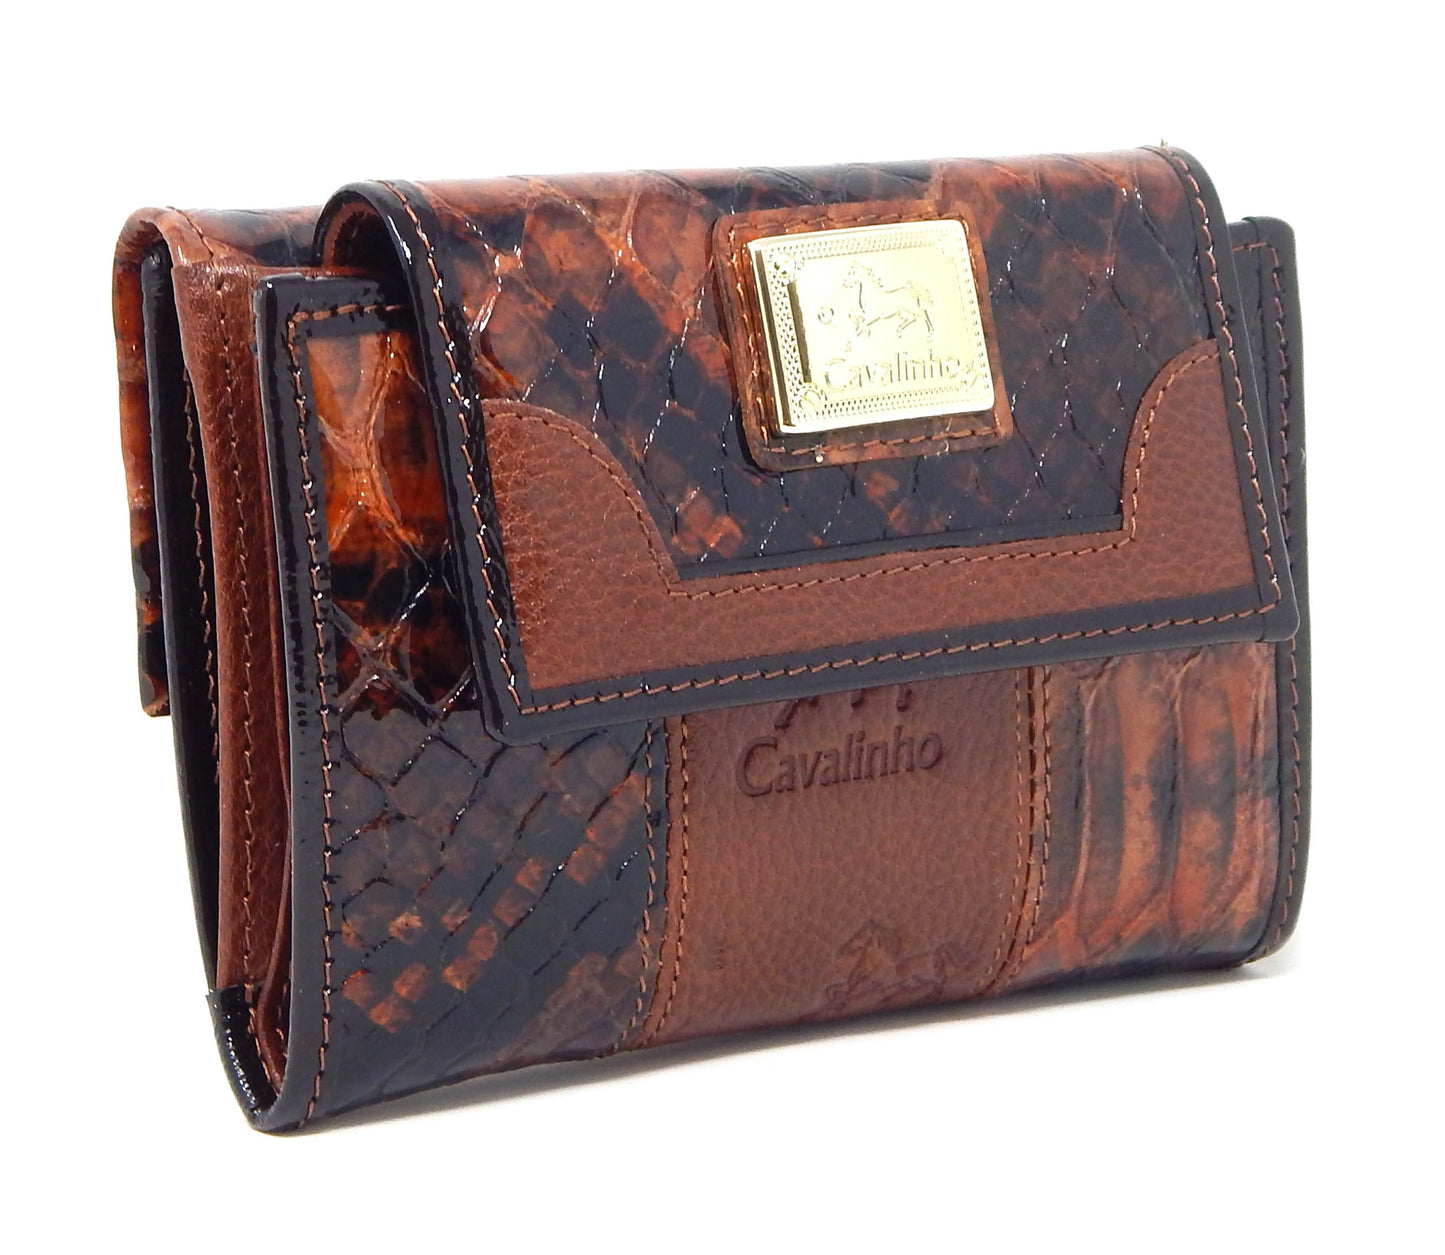 #color_ SaddleBrown | Cavalinho Honor Wallet - SaddleBrown - 28190203.13.99_2